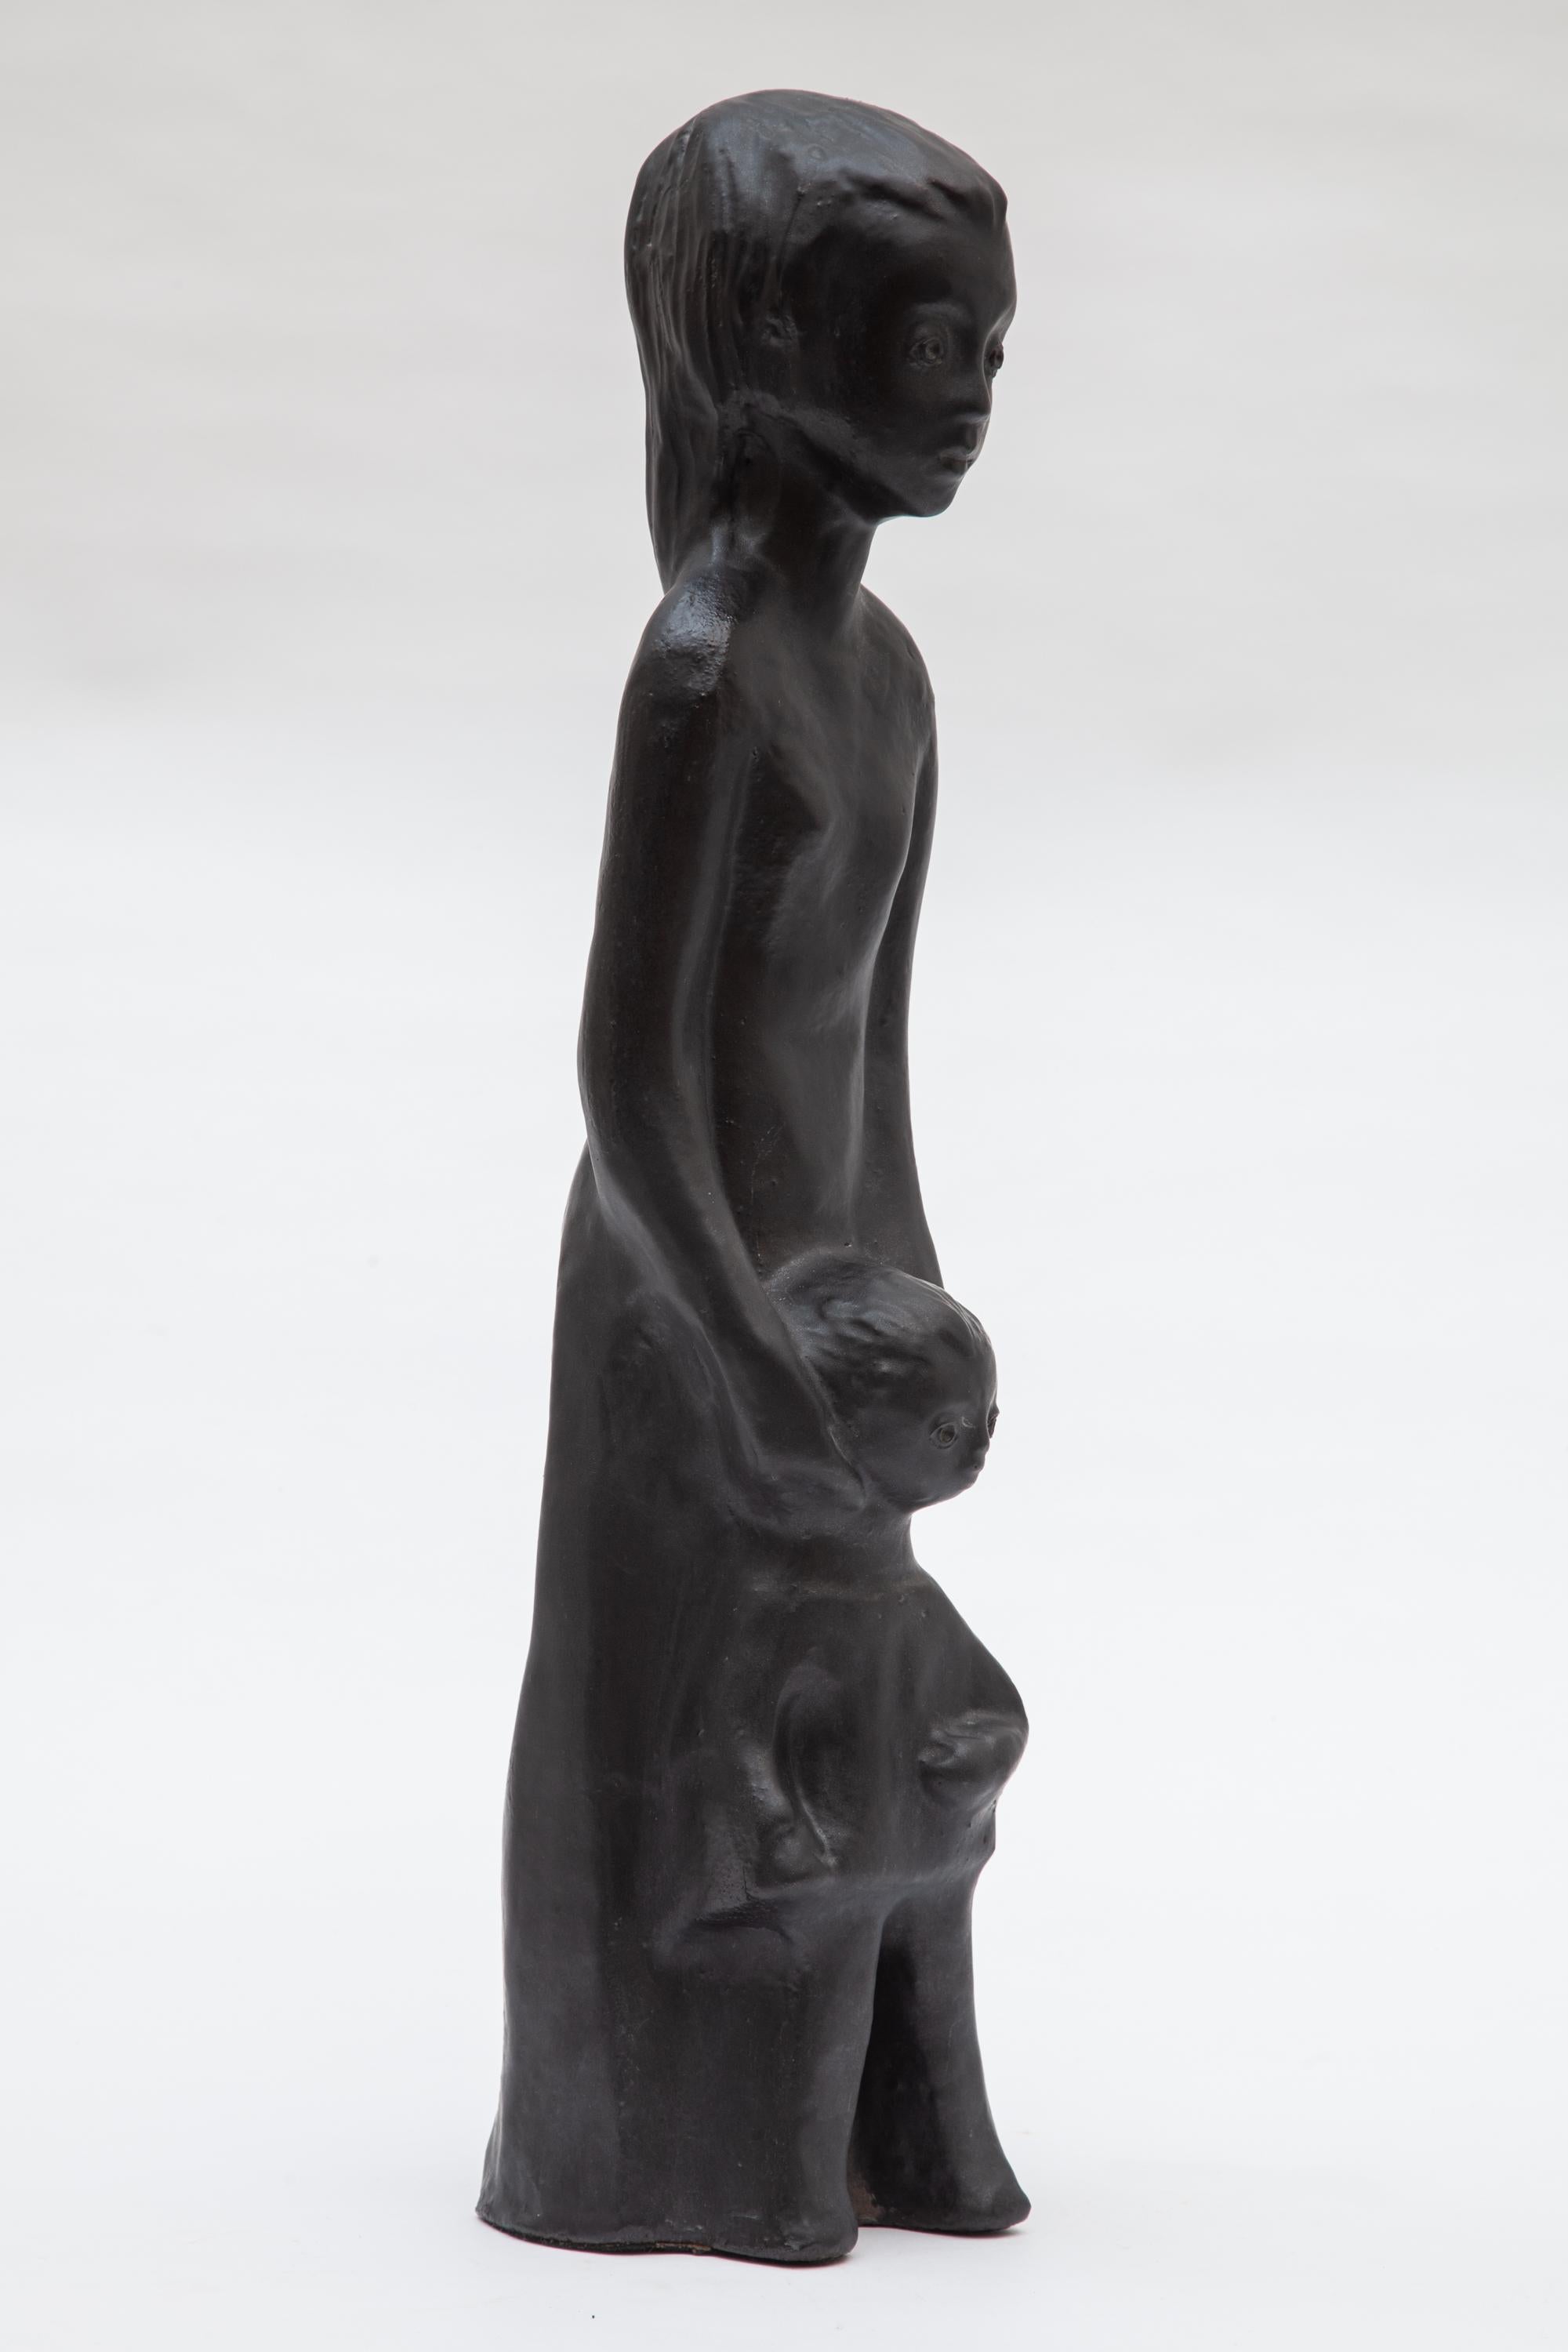 Frühe gegossene Amphora-Keramikskulptur von Mutter und Kind, geschaffen von Elie Van Damme, um 1960.
Schwarze Metallic-Glasur. Perfekter Zustand. 

Kostenloser Versand.